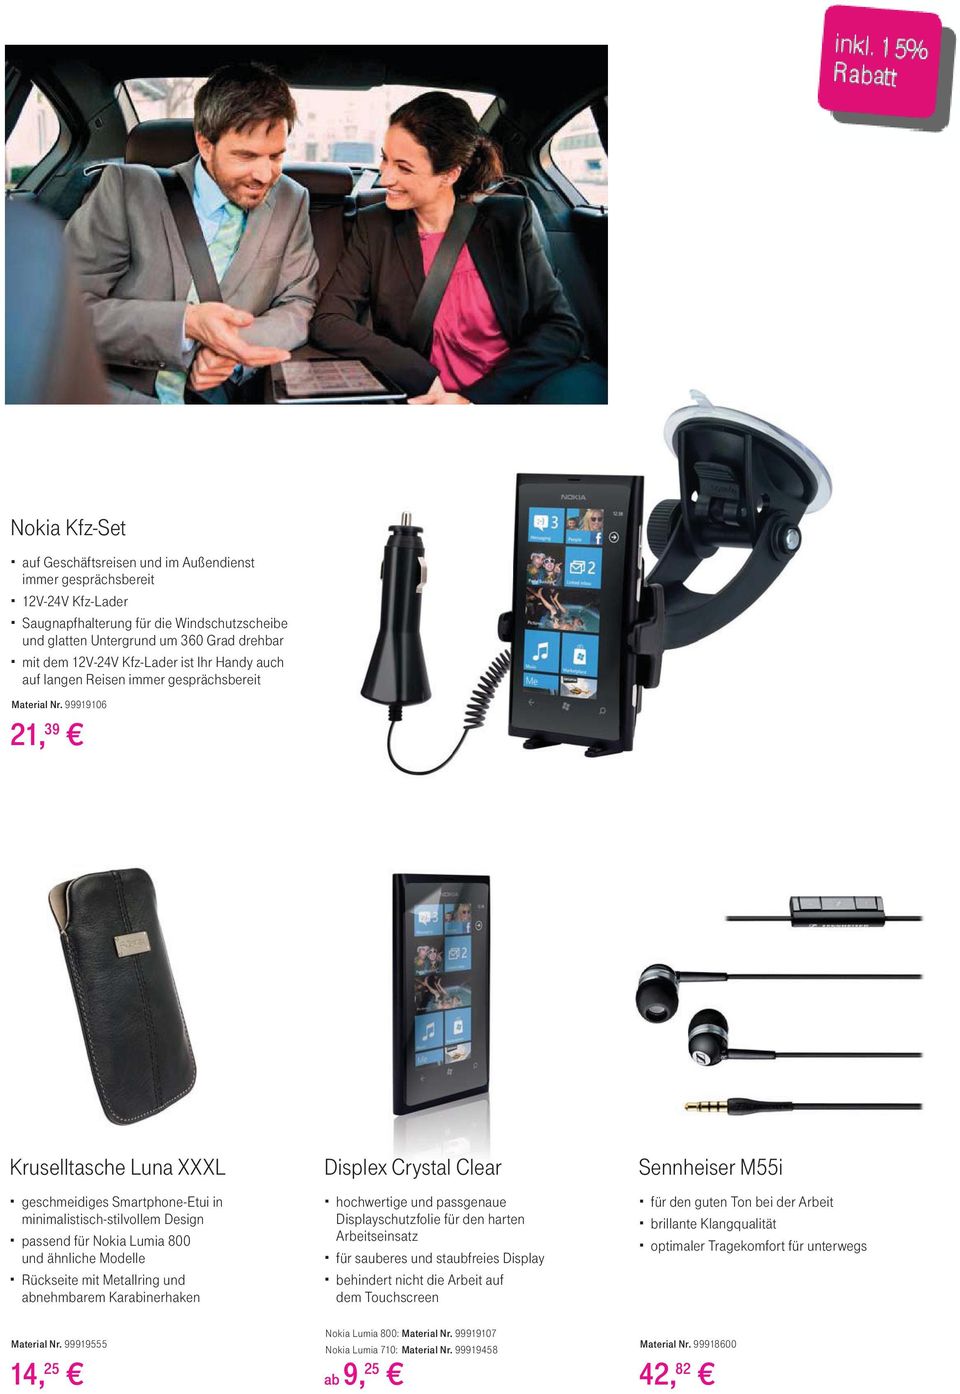 99919106 21, 39 Kruselltasche Luna XXXL geschmeidiges Smartphone-Etui in minimalistisch-stilvollem Design passend für Nokia Lumia 800 und ähnliche Modelle Rückseite mit Metallring und abnehmbarem